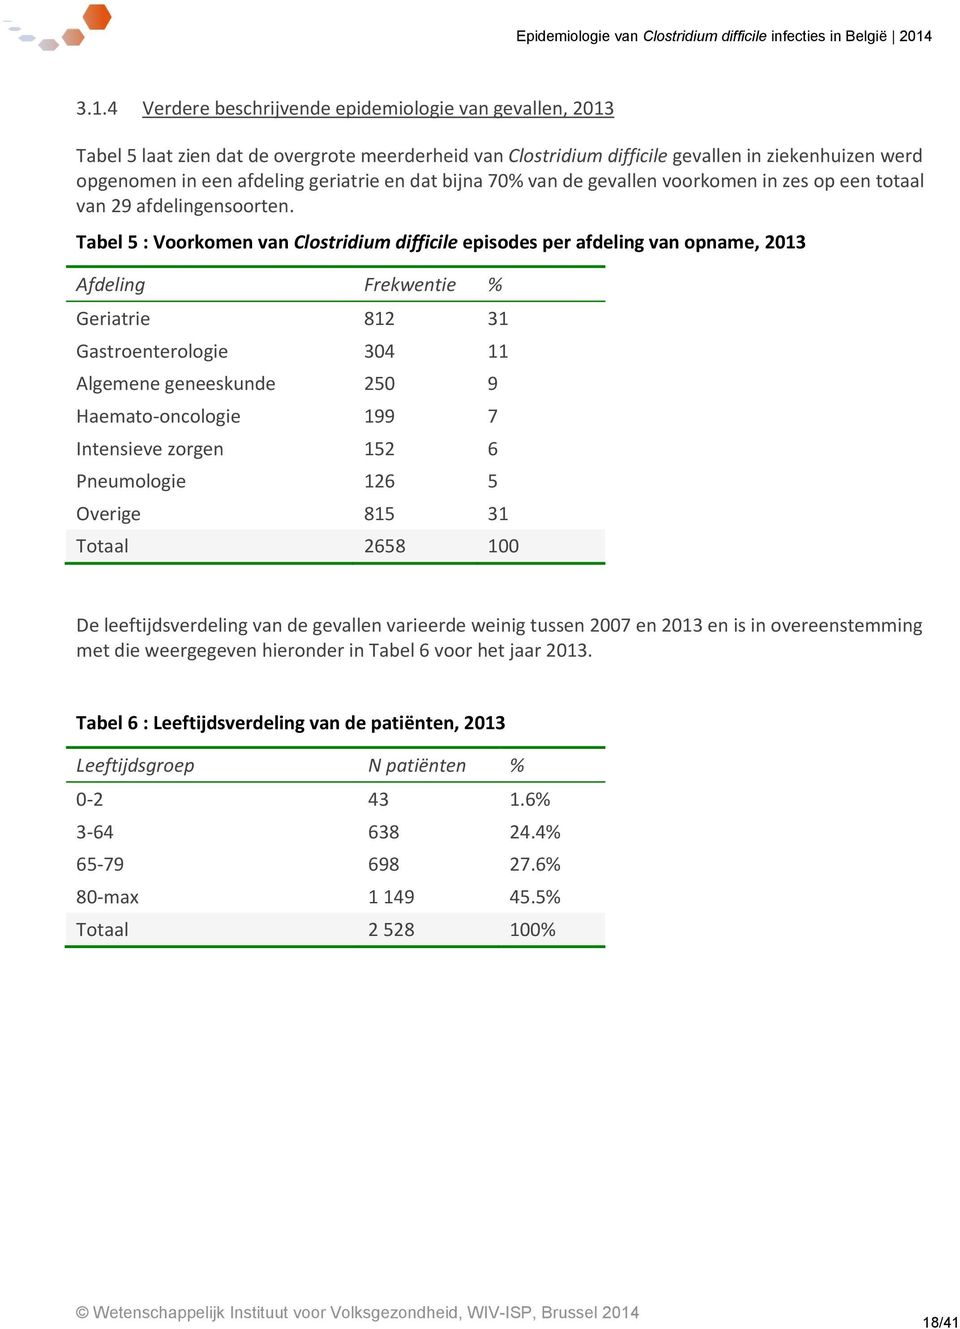 Tabel 5 : Voorkomen van Clostridium difficile episodes per afdeling van opname, 2013 Afdeling Frekwentie % Geriatrie 812 31 Gastroenterologie 304 11 Algemene geneeskunde 250 9 Haemato-oncologie 199 7